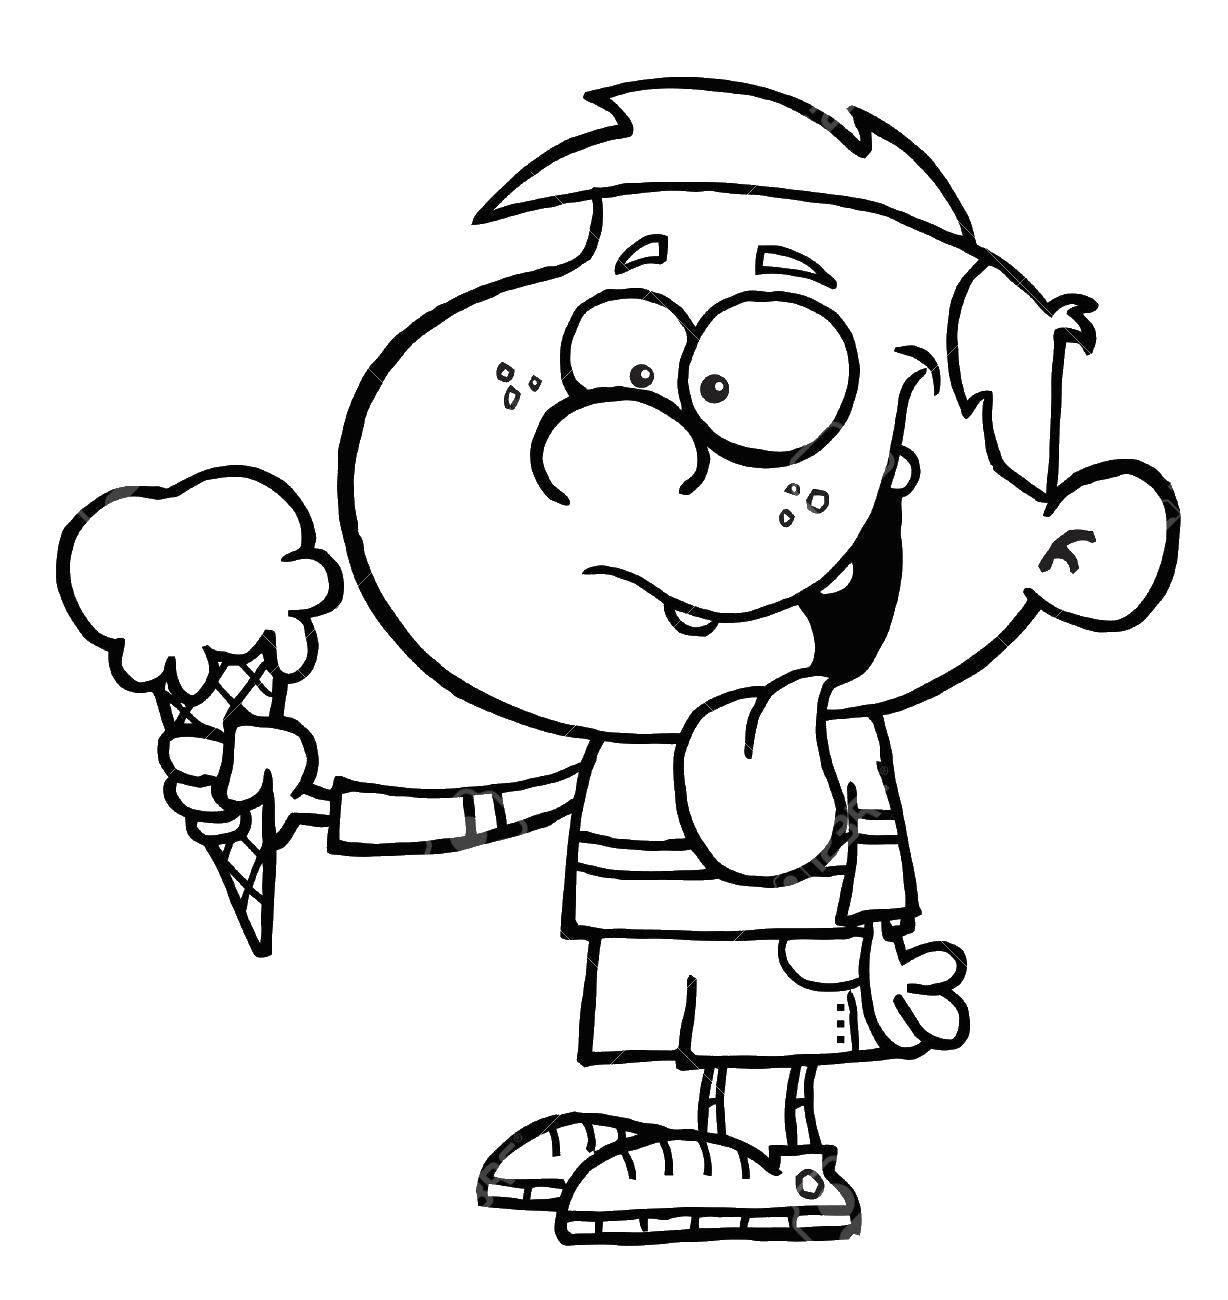 Опис: розмальовки  Хлопчик з морозивом. Категорія: морозиво. Теги:  морозиво, хлопчик.